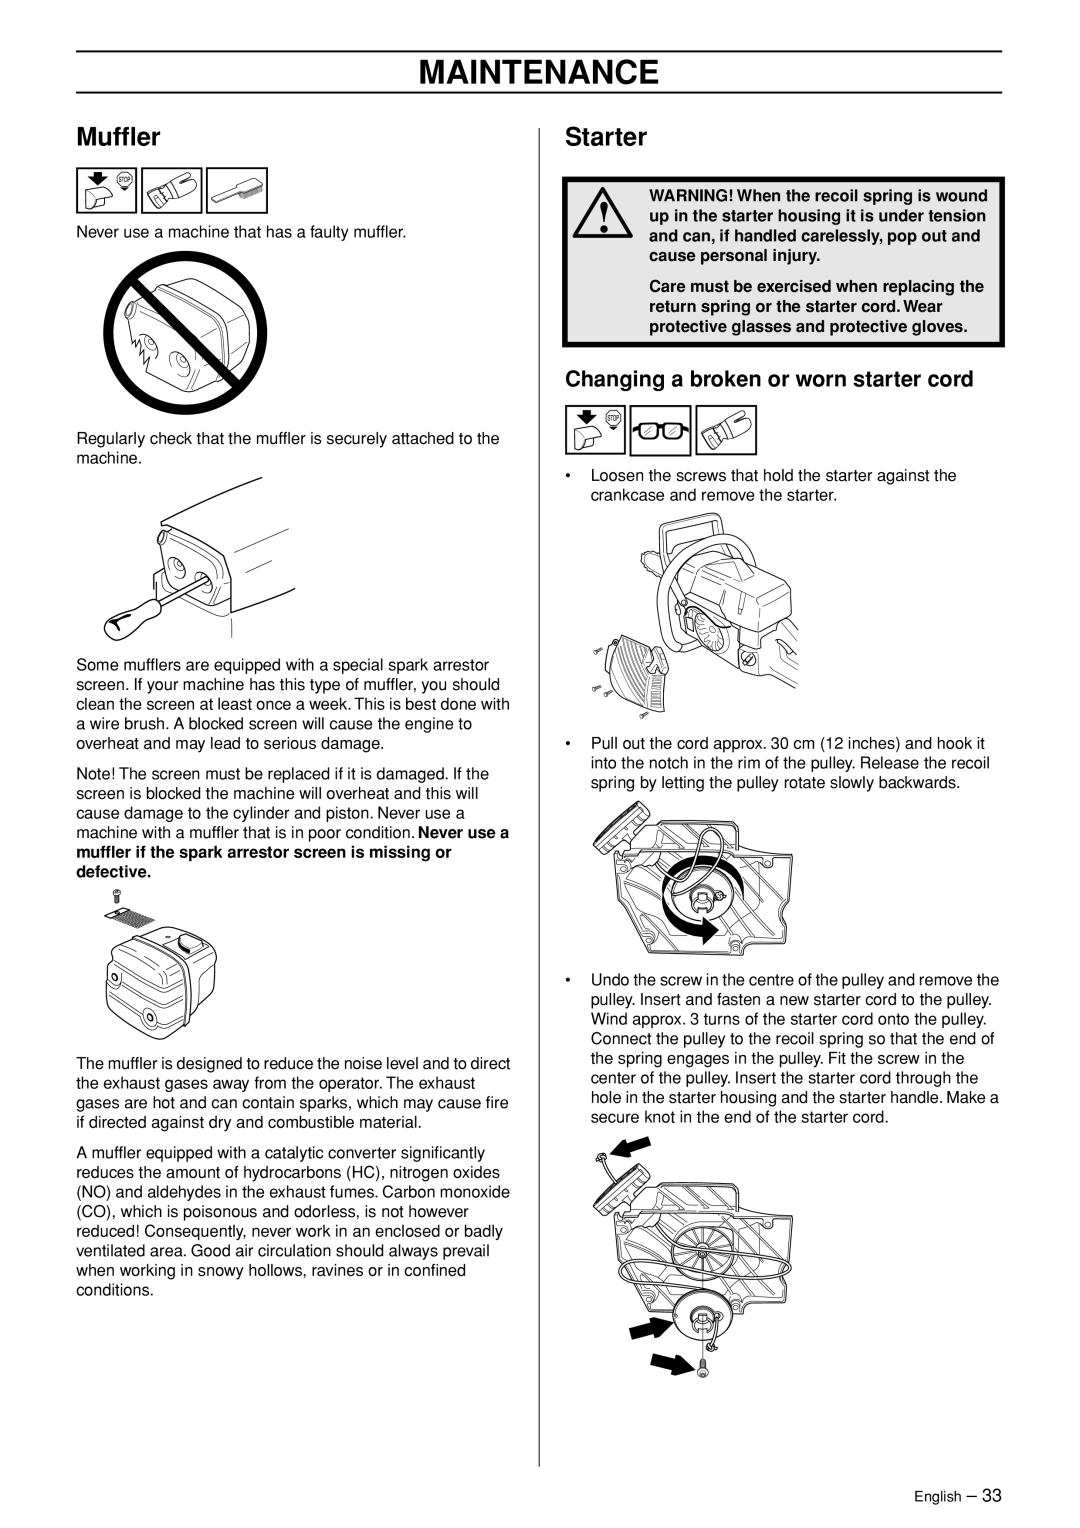 Jonsered CS 2255 manual Mufﬂer, Starter, Changing a broken or worn starter cord, Maintenance 